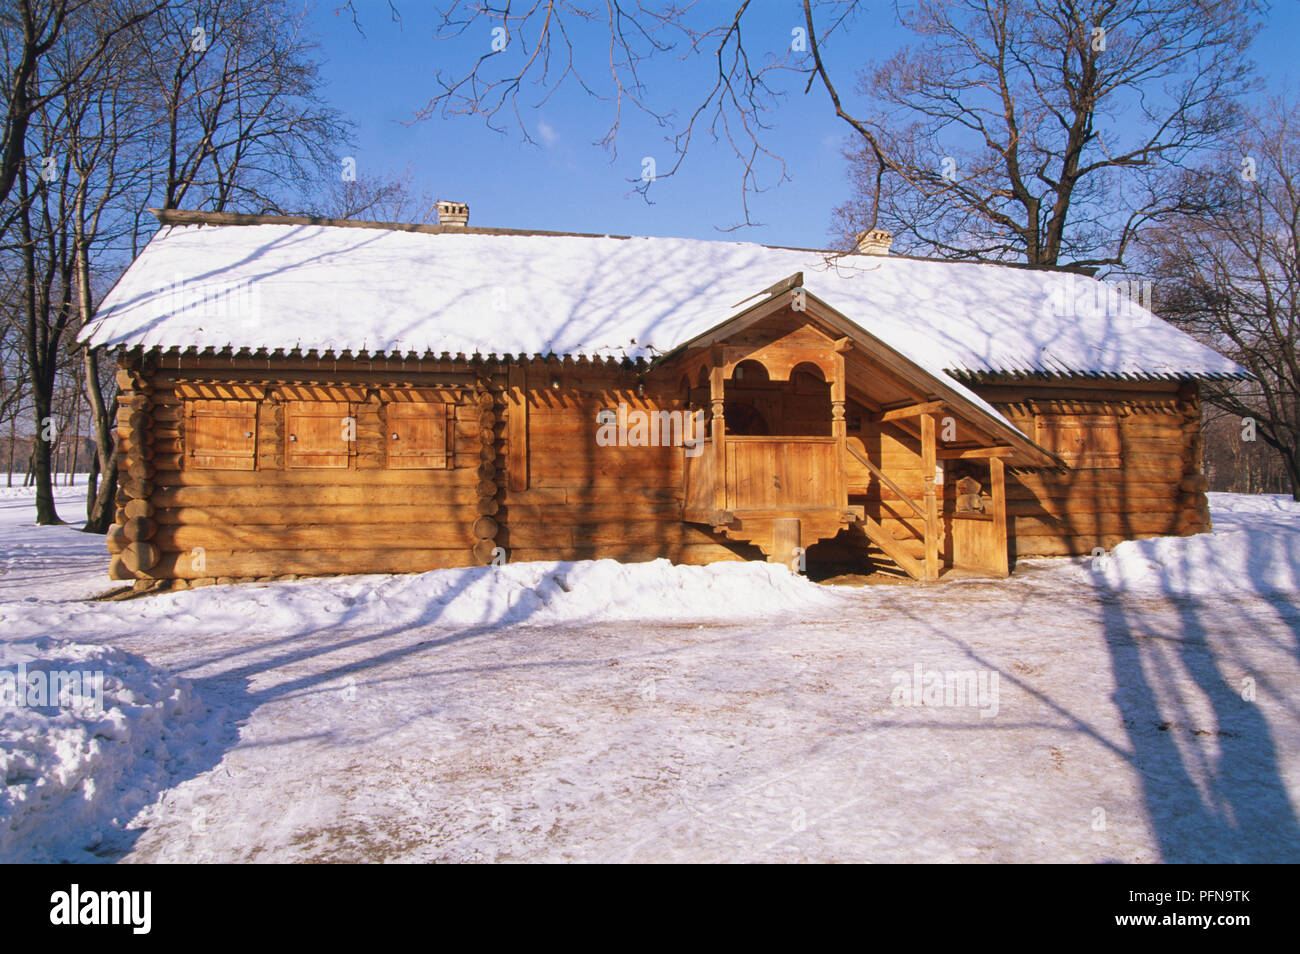 La Russia, Mosca, Pietro il Grande's Cabin costruito per lo zar Pietro il Grande nel 1702, circondato da neve. Foto Stock